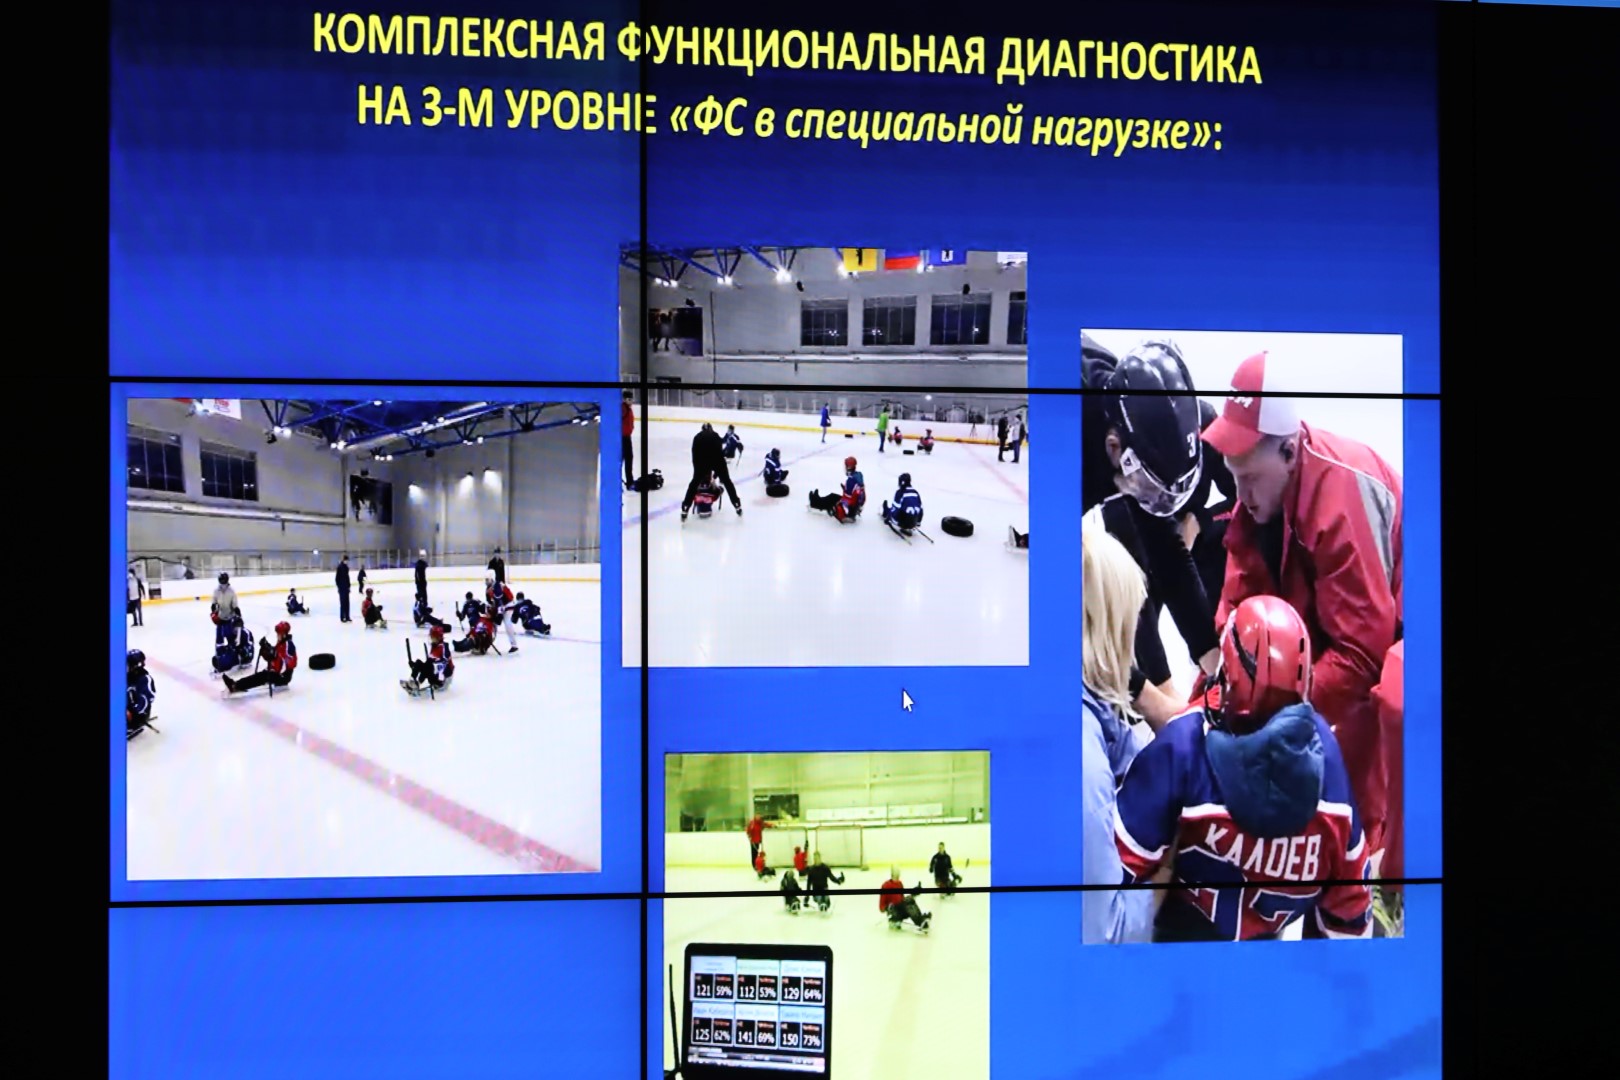 Ярославская команда по следж-хоккею готовится к первой игре